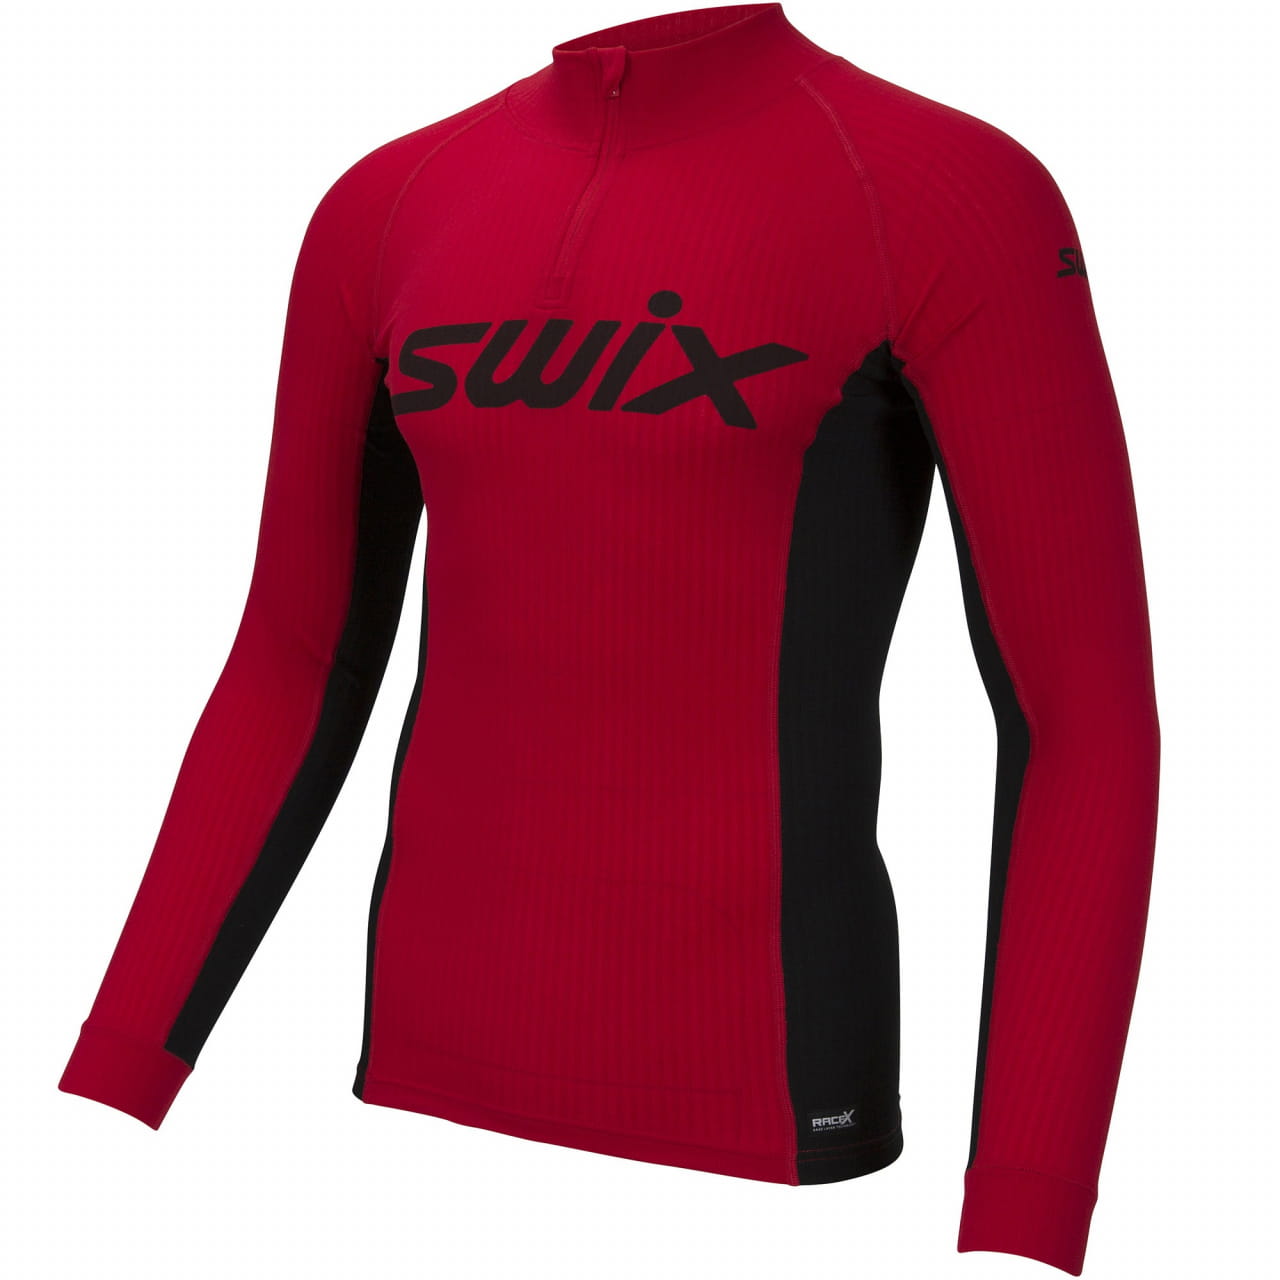 Chemise de sport pour hommes avec fermeture à glissière Swix Racex